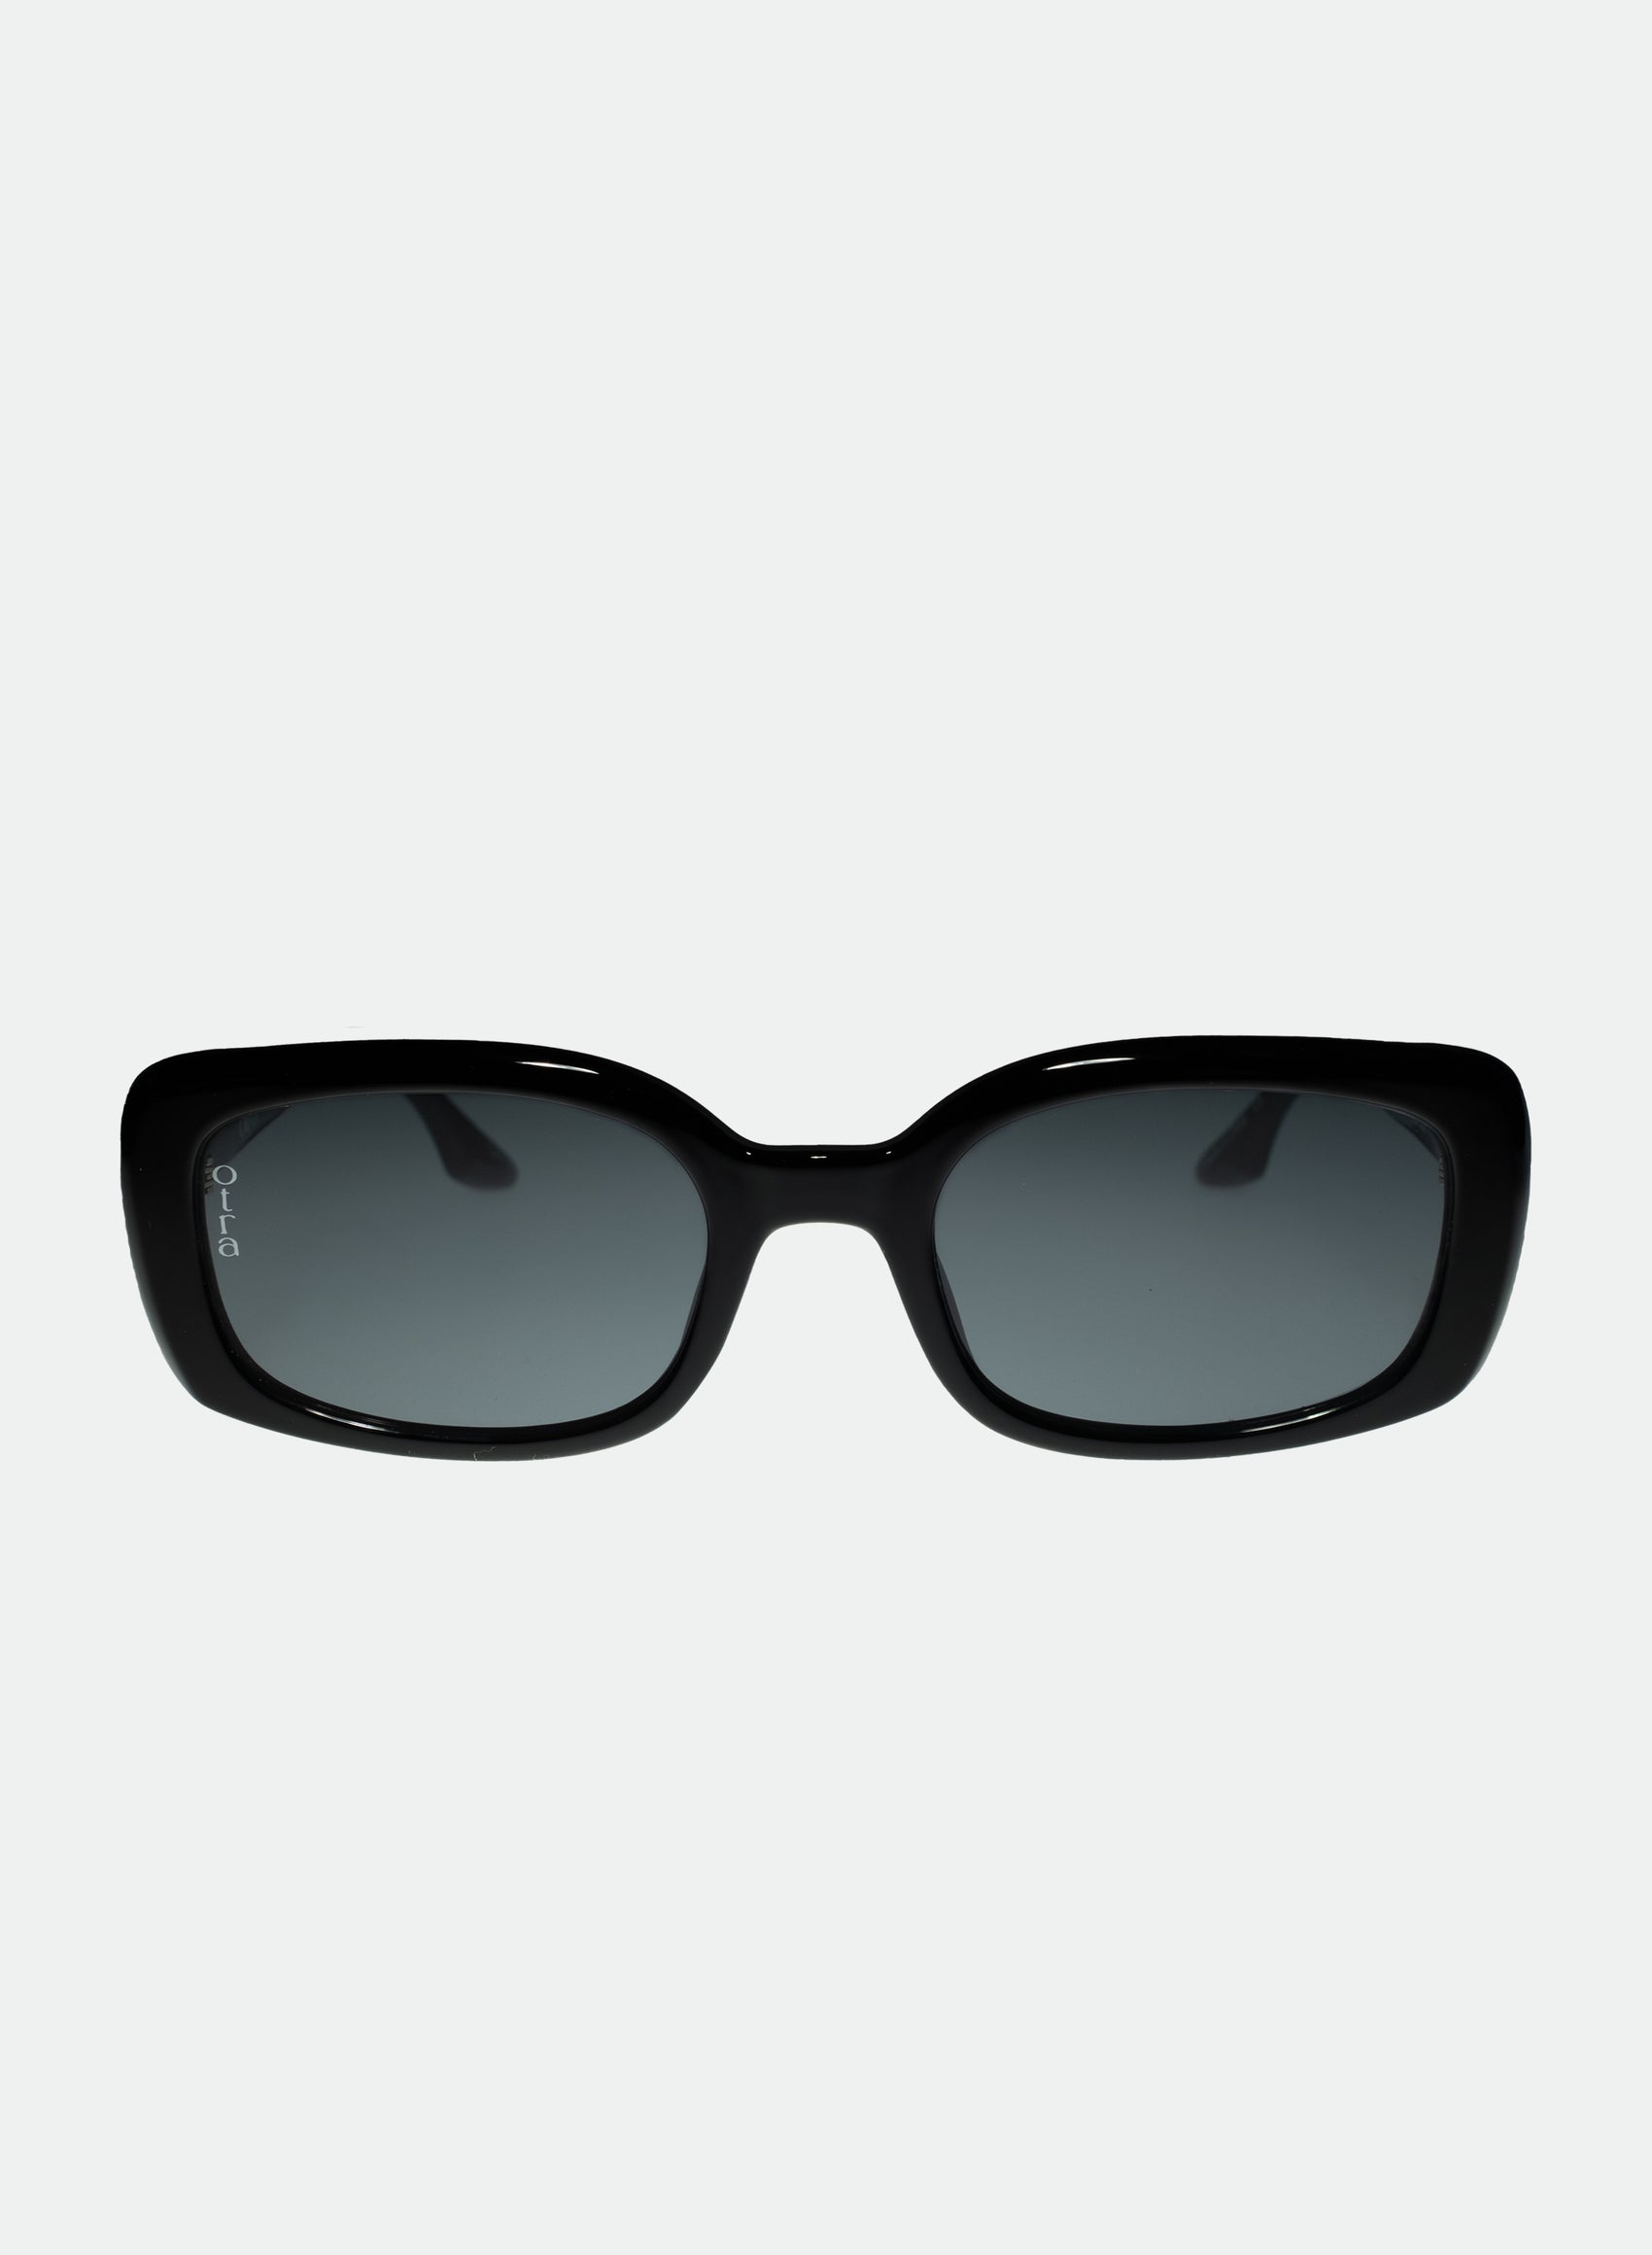 Daisy small rectangle sunglasses in black